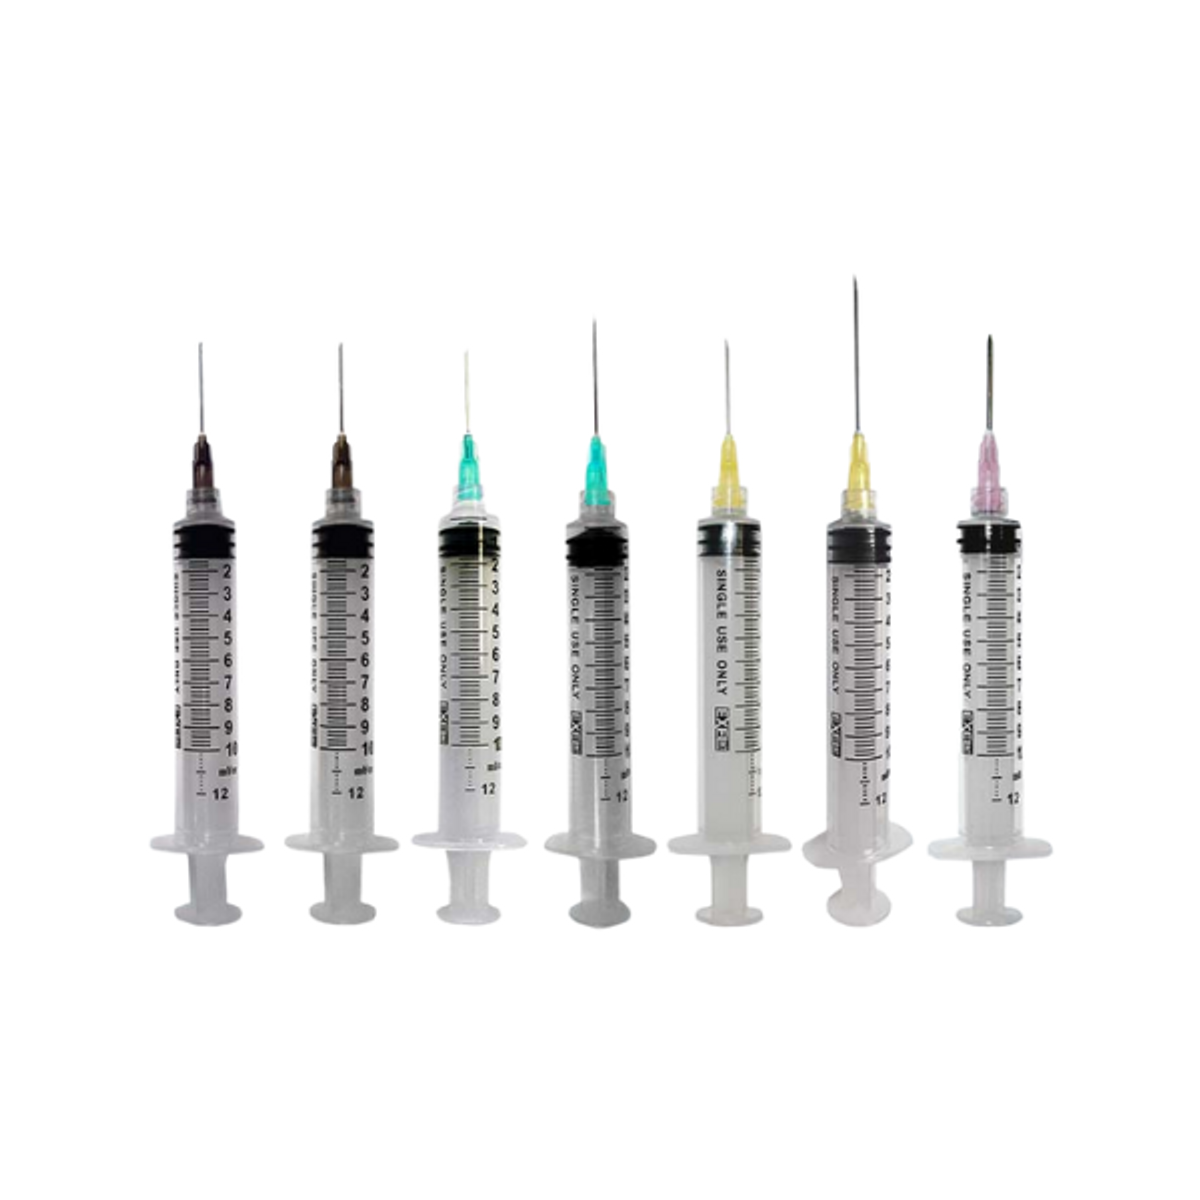 Exel Luer Lock Syringe With Needle, 10-12cc